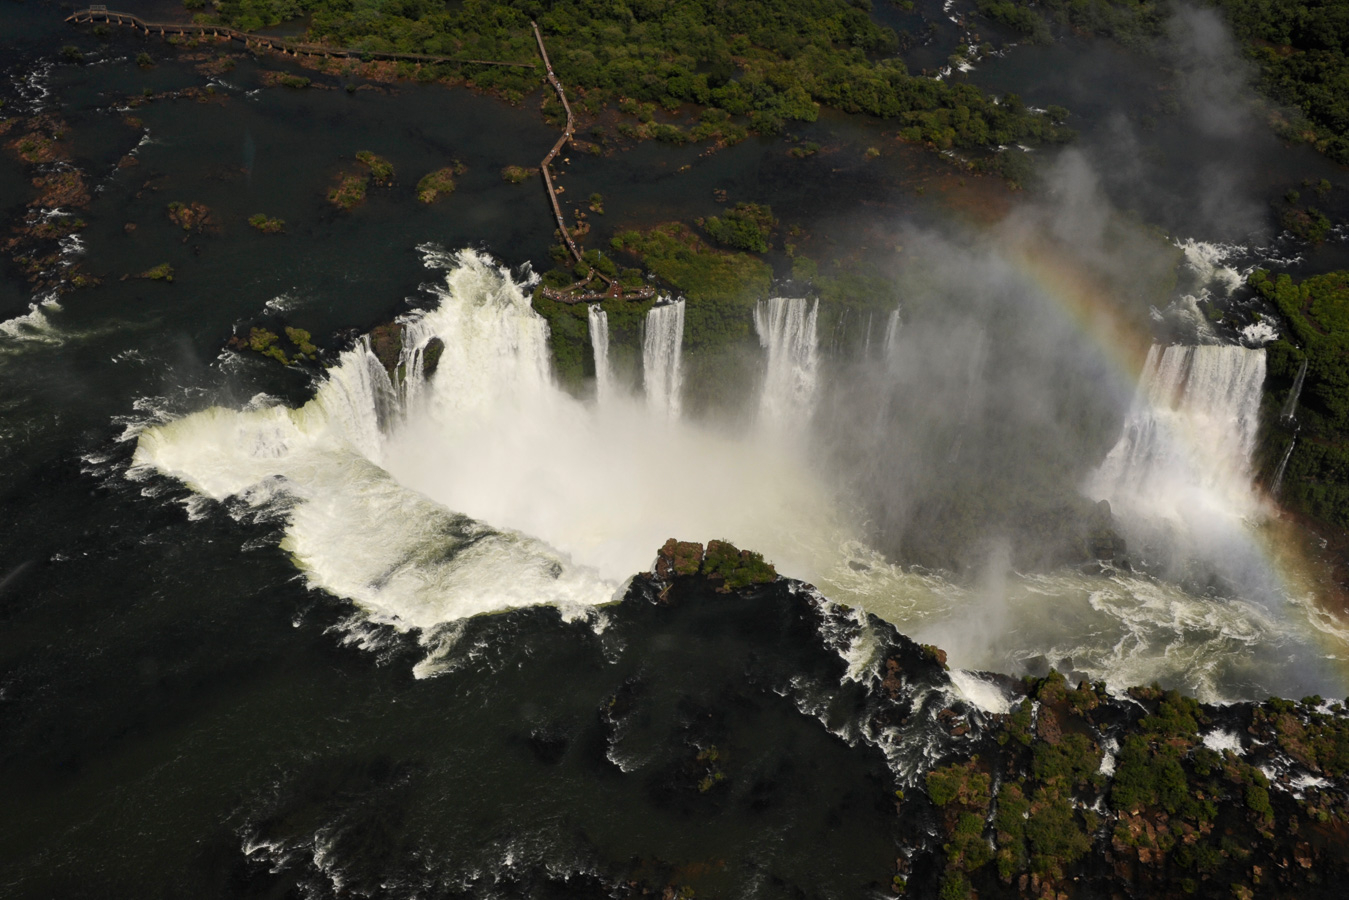 Cataratas del Iguazu [42 mm, 1/1000 sec at f / 13, ISO 800]